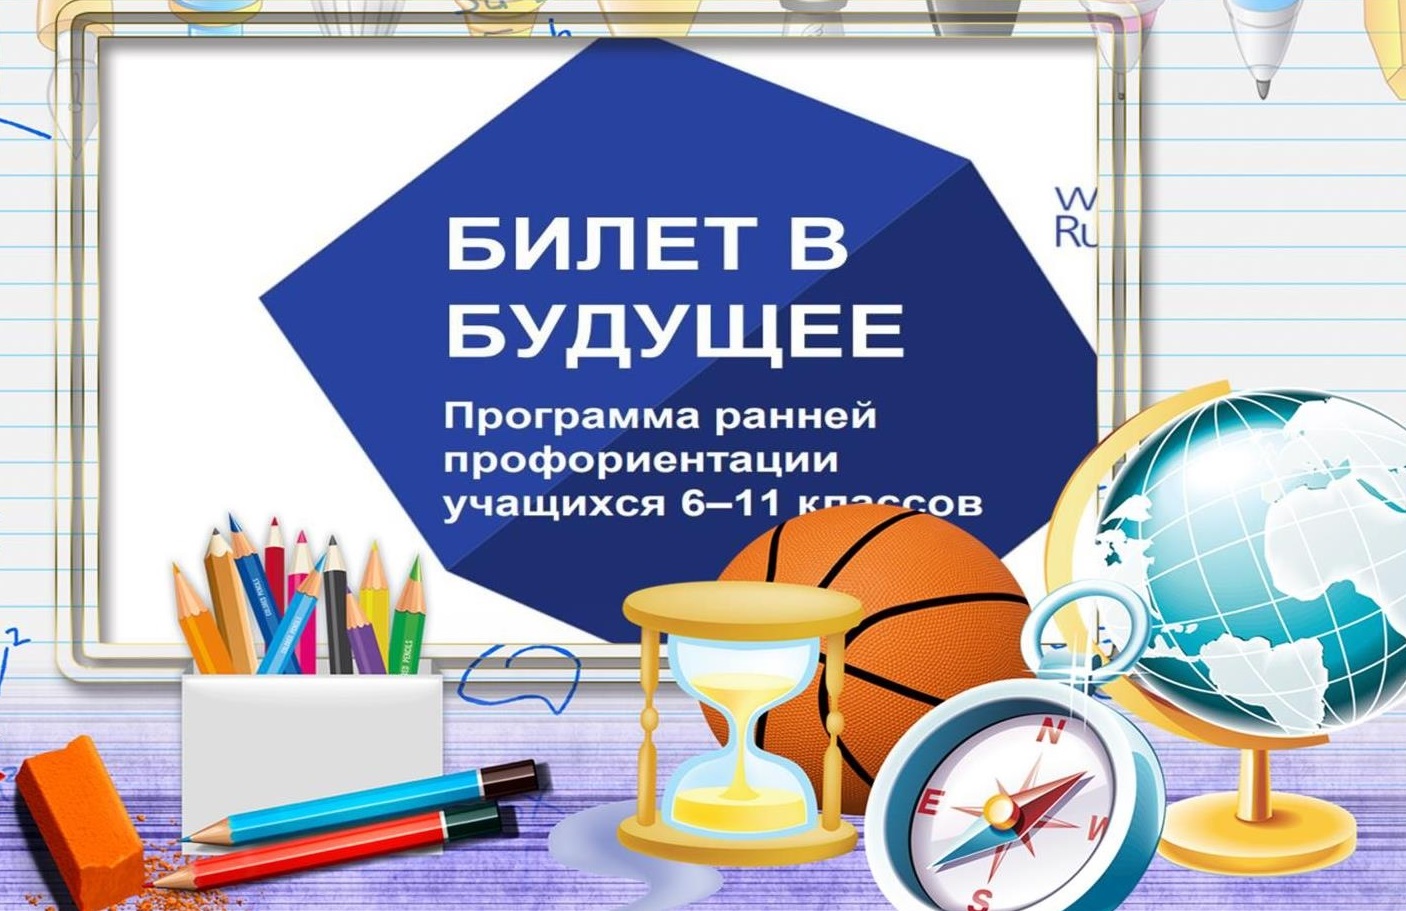 В УлГПУ им. И.Н. Ульянова реализуется профориентационный проект для школьников «Билет в будущее»